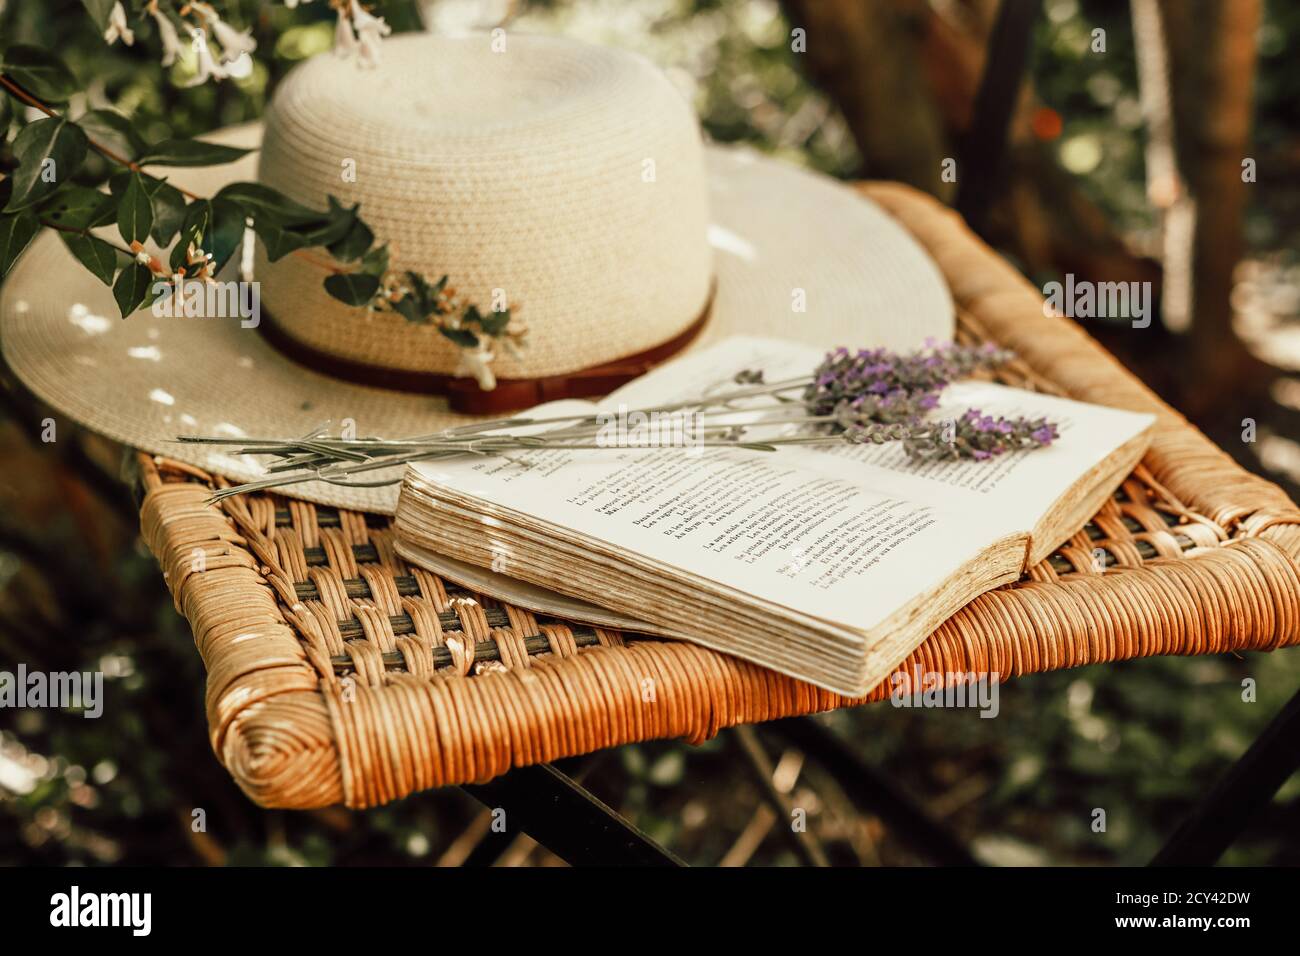 Bouquet di lavanda su libro aperto e cappello estivo femminile su vecchia sedia in vimini in giardino, natura e concetto di vita lenta Foto Stock